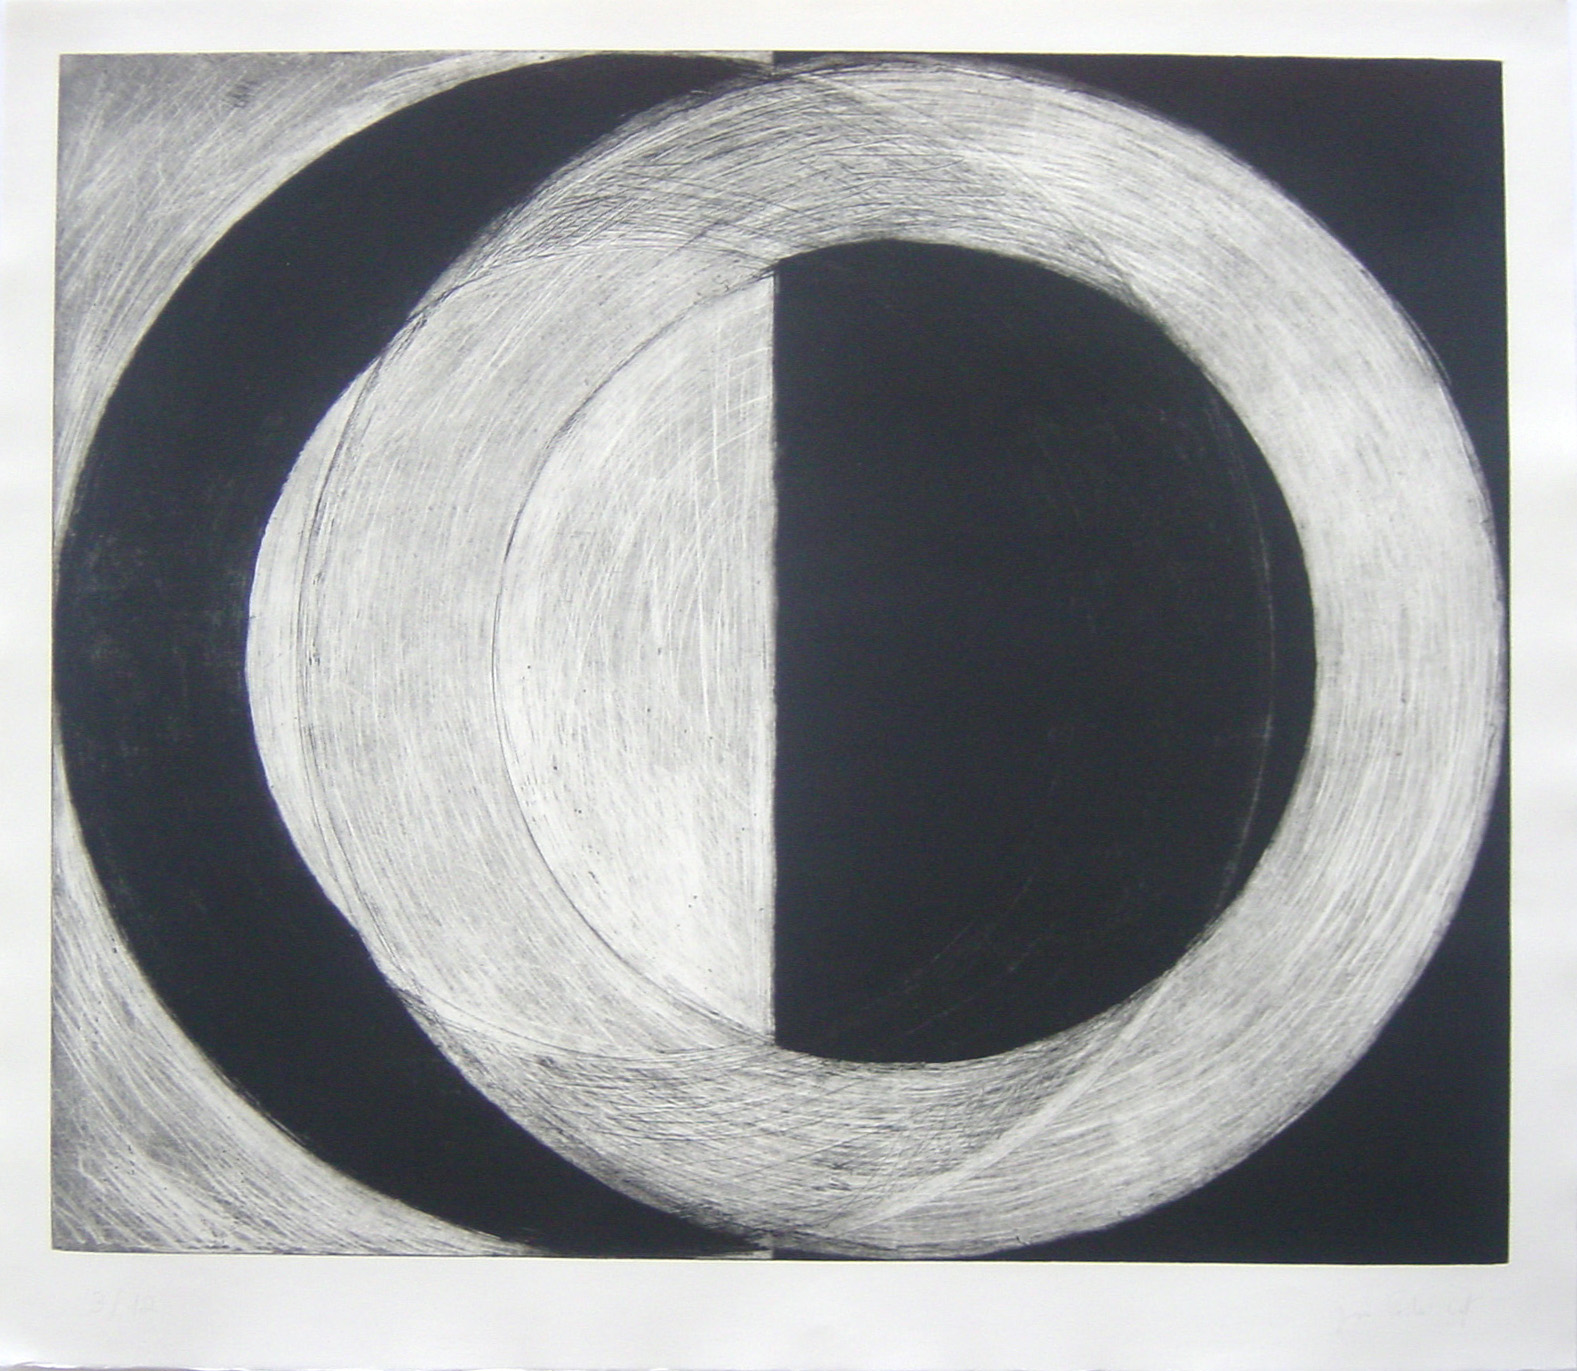 S/T, (ed.12), 1997, aguafuerte, 112 x 129 cm.